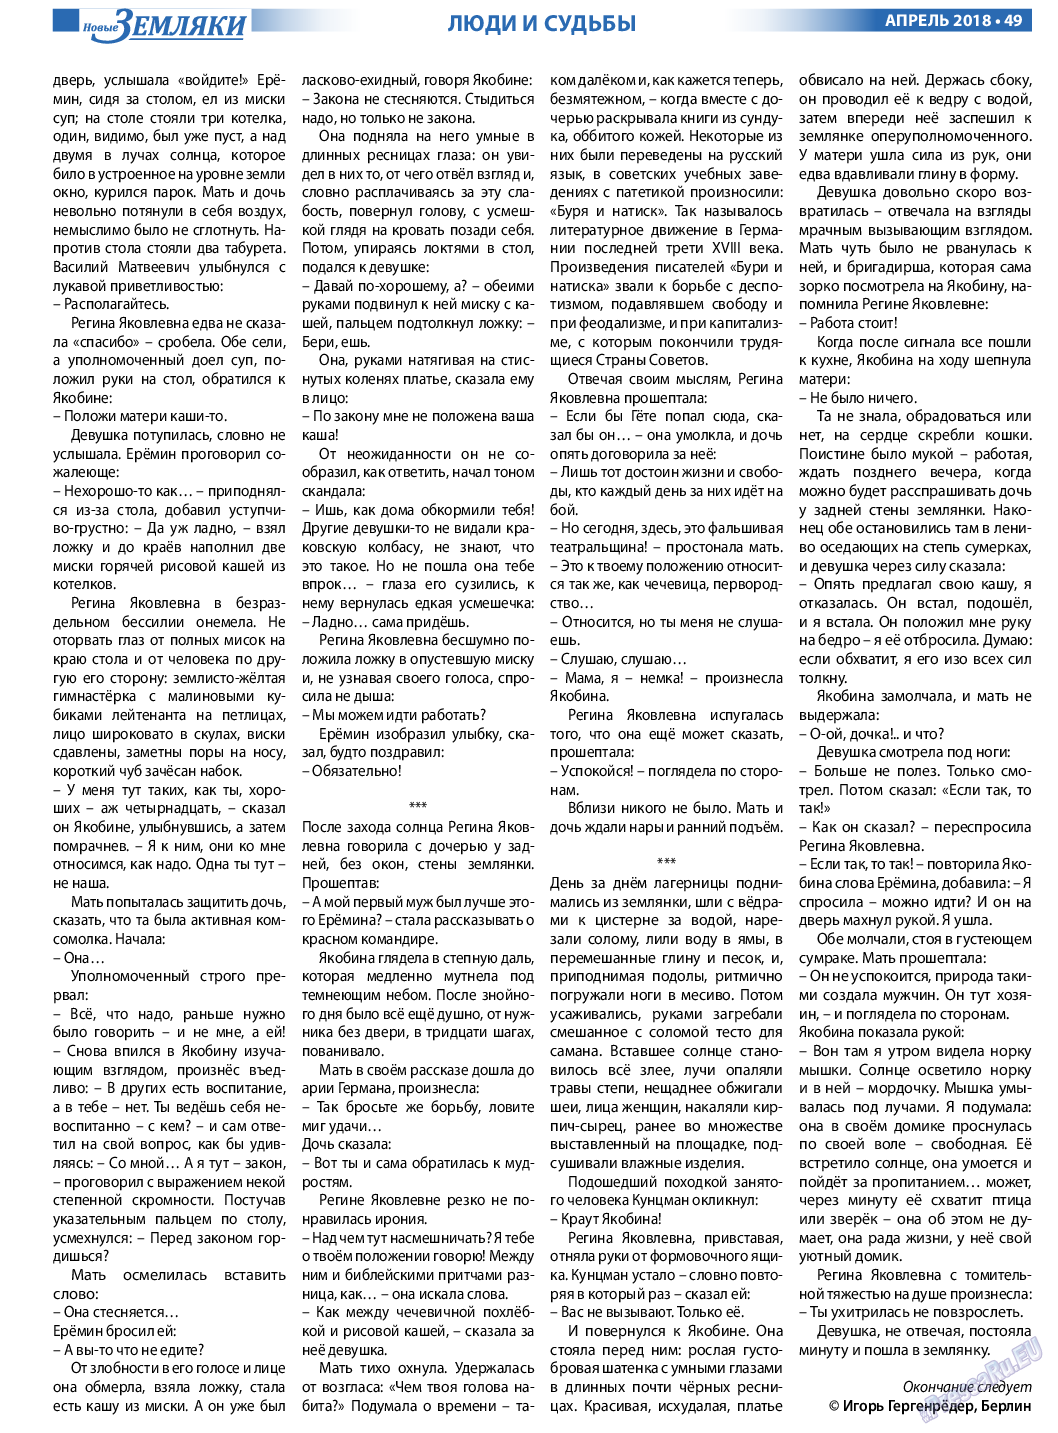 Новые Земляки, газета. 2018 №4 стр.49